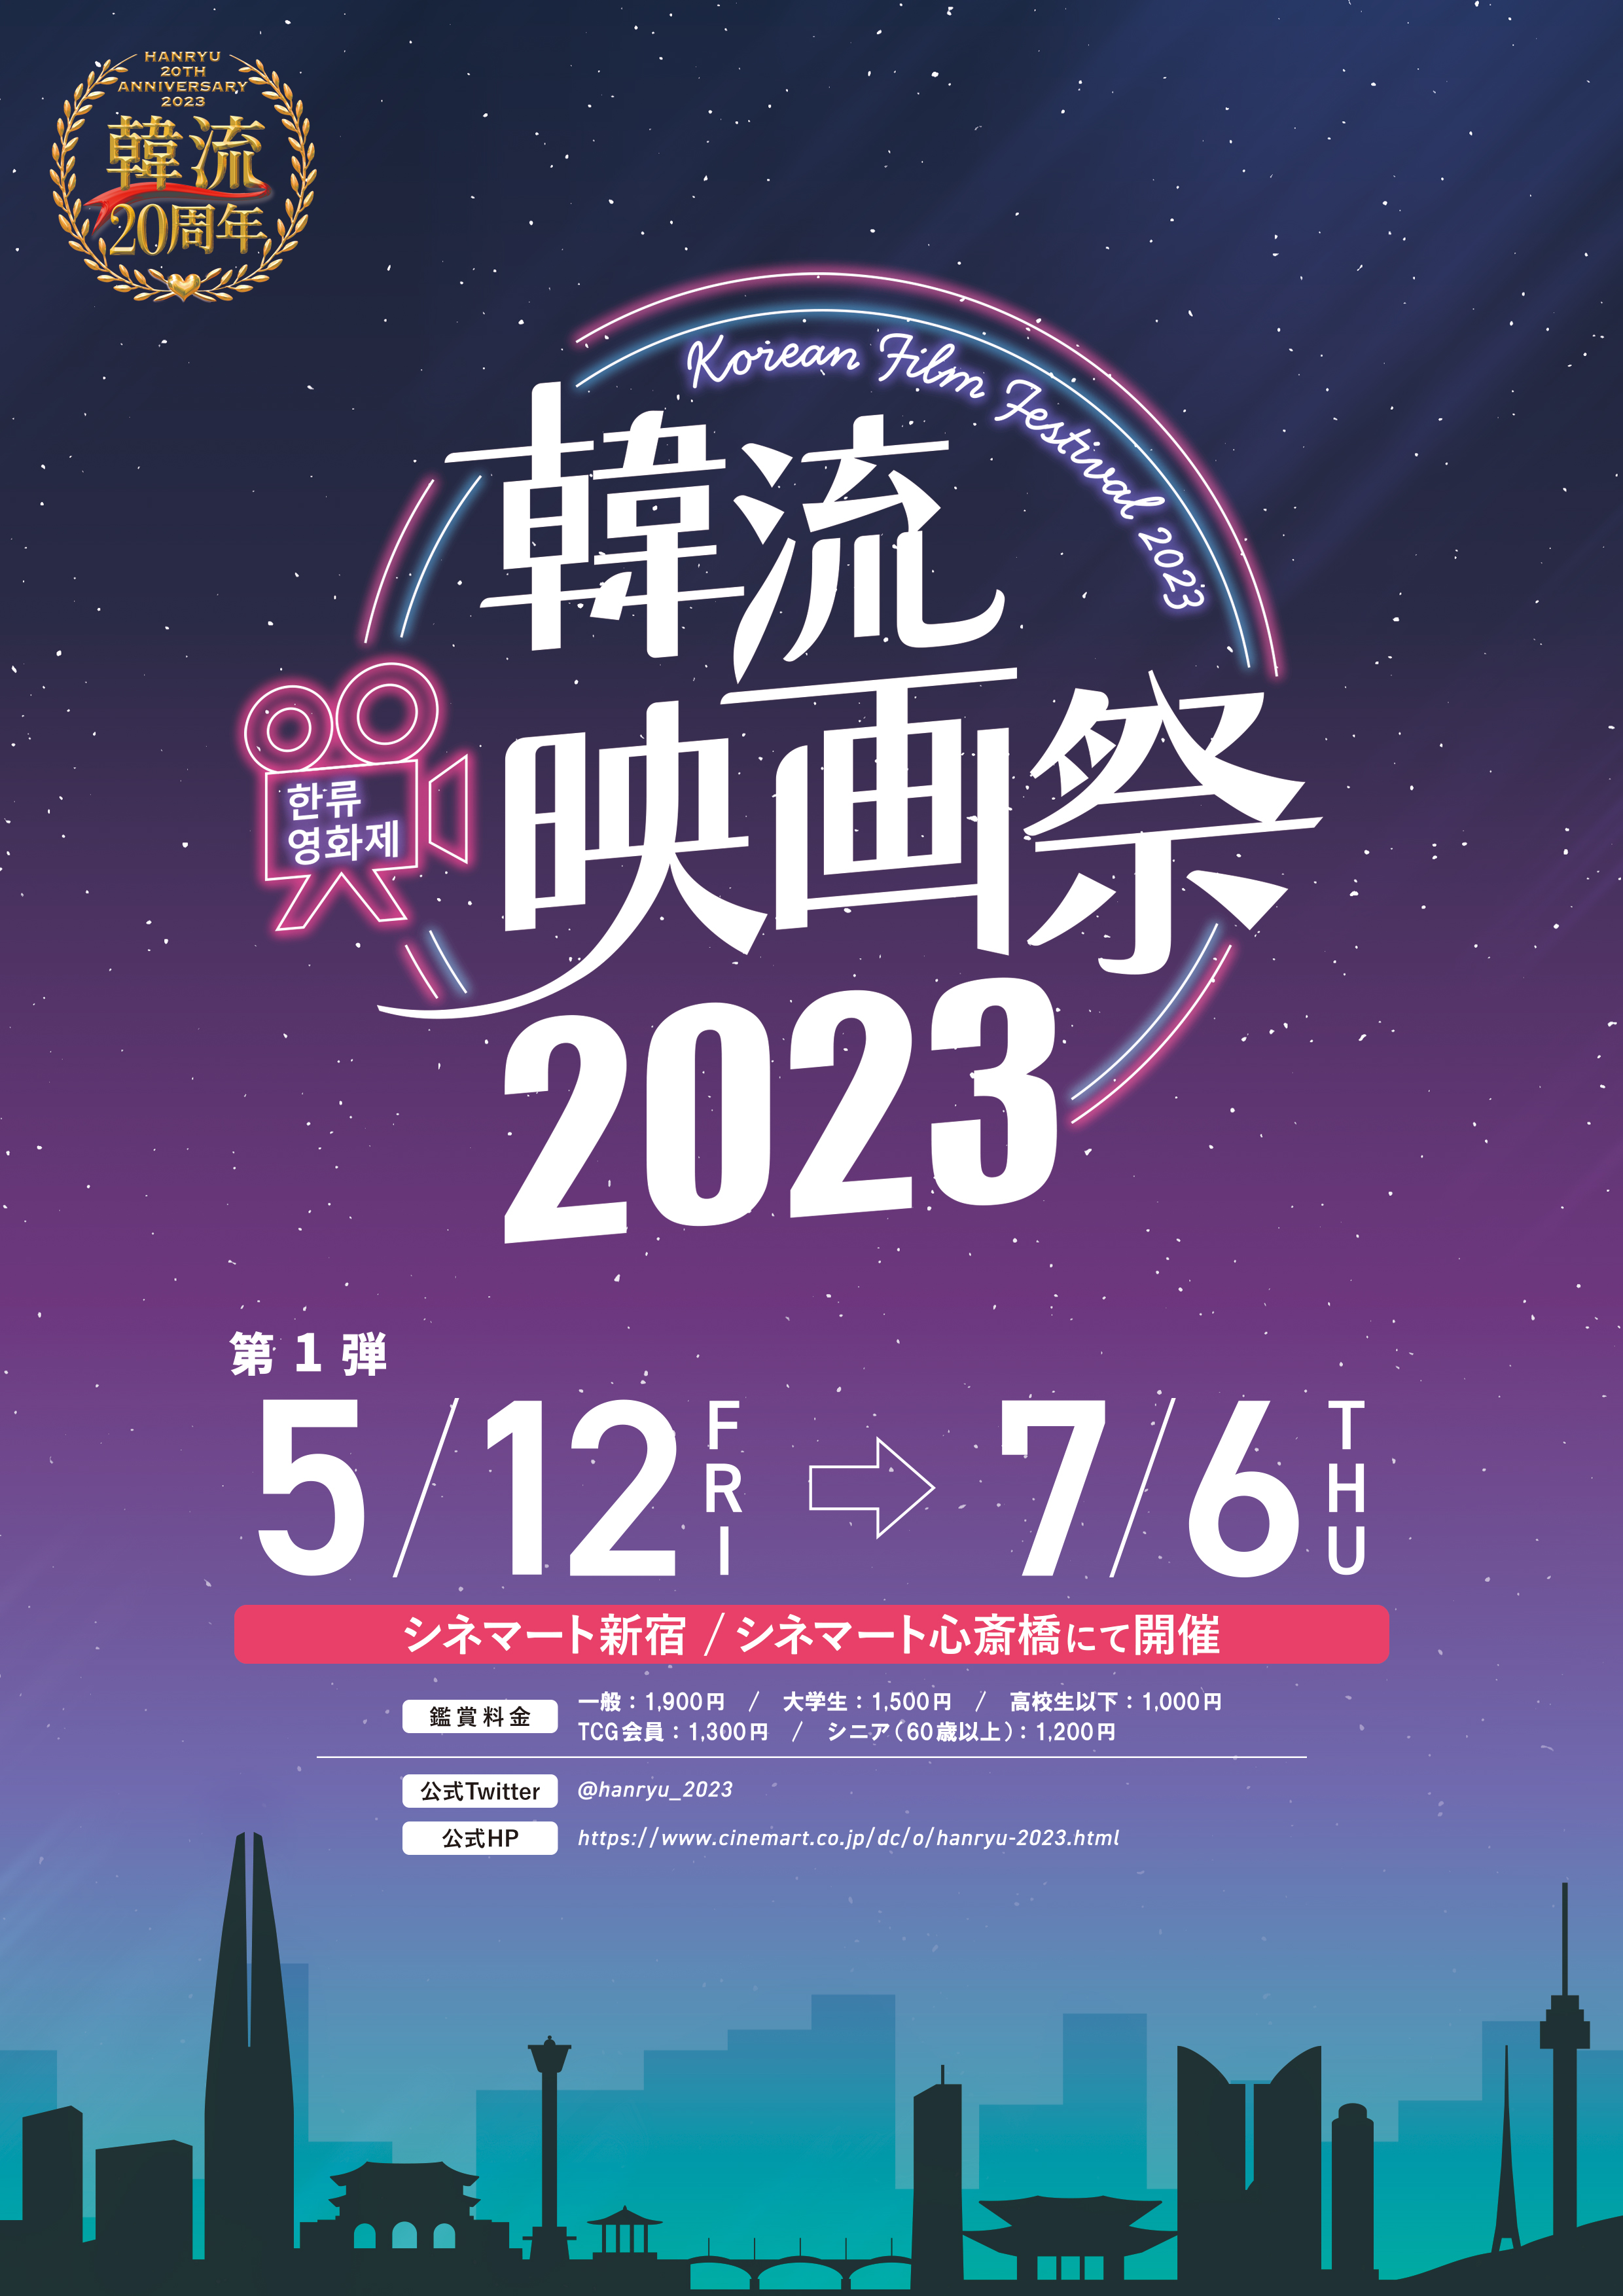 「韓流映画祭2023」ポスタービジュアル